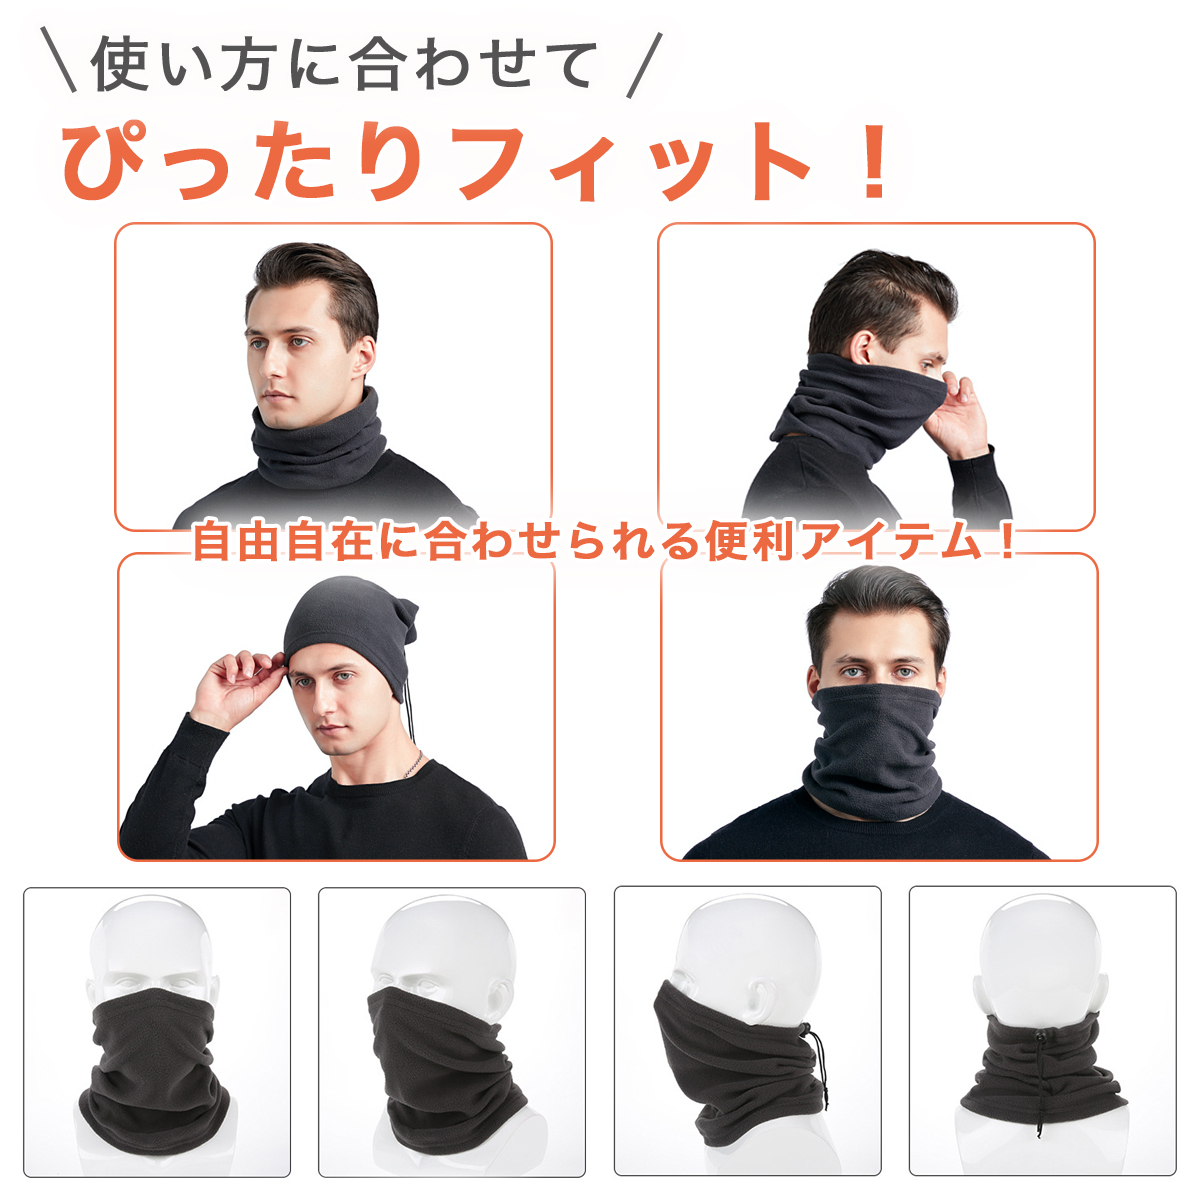  neck warmer men's baseball Kids protection against cold face mask . manner cold . measures sport fleece snood warm long 